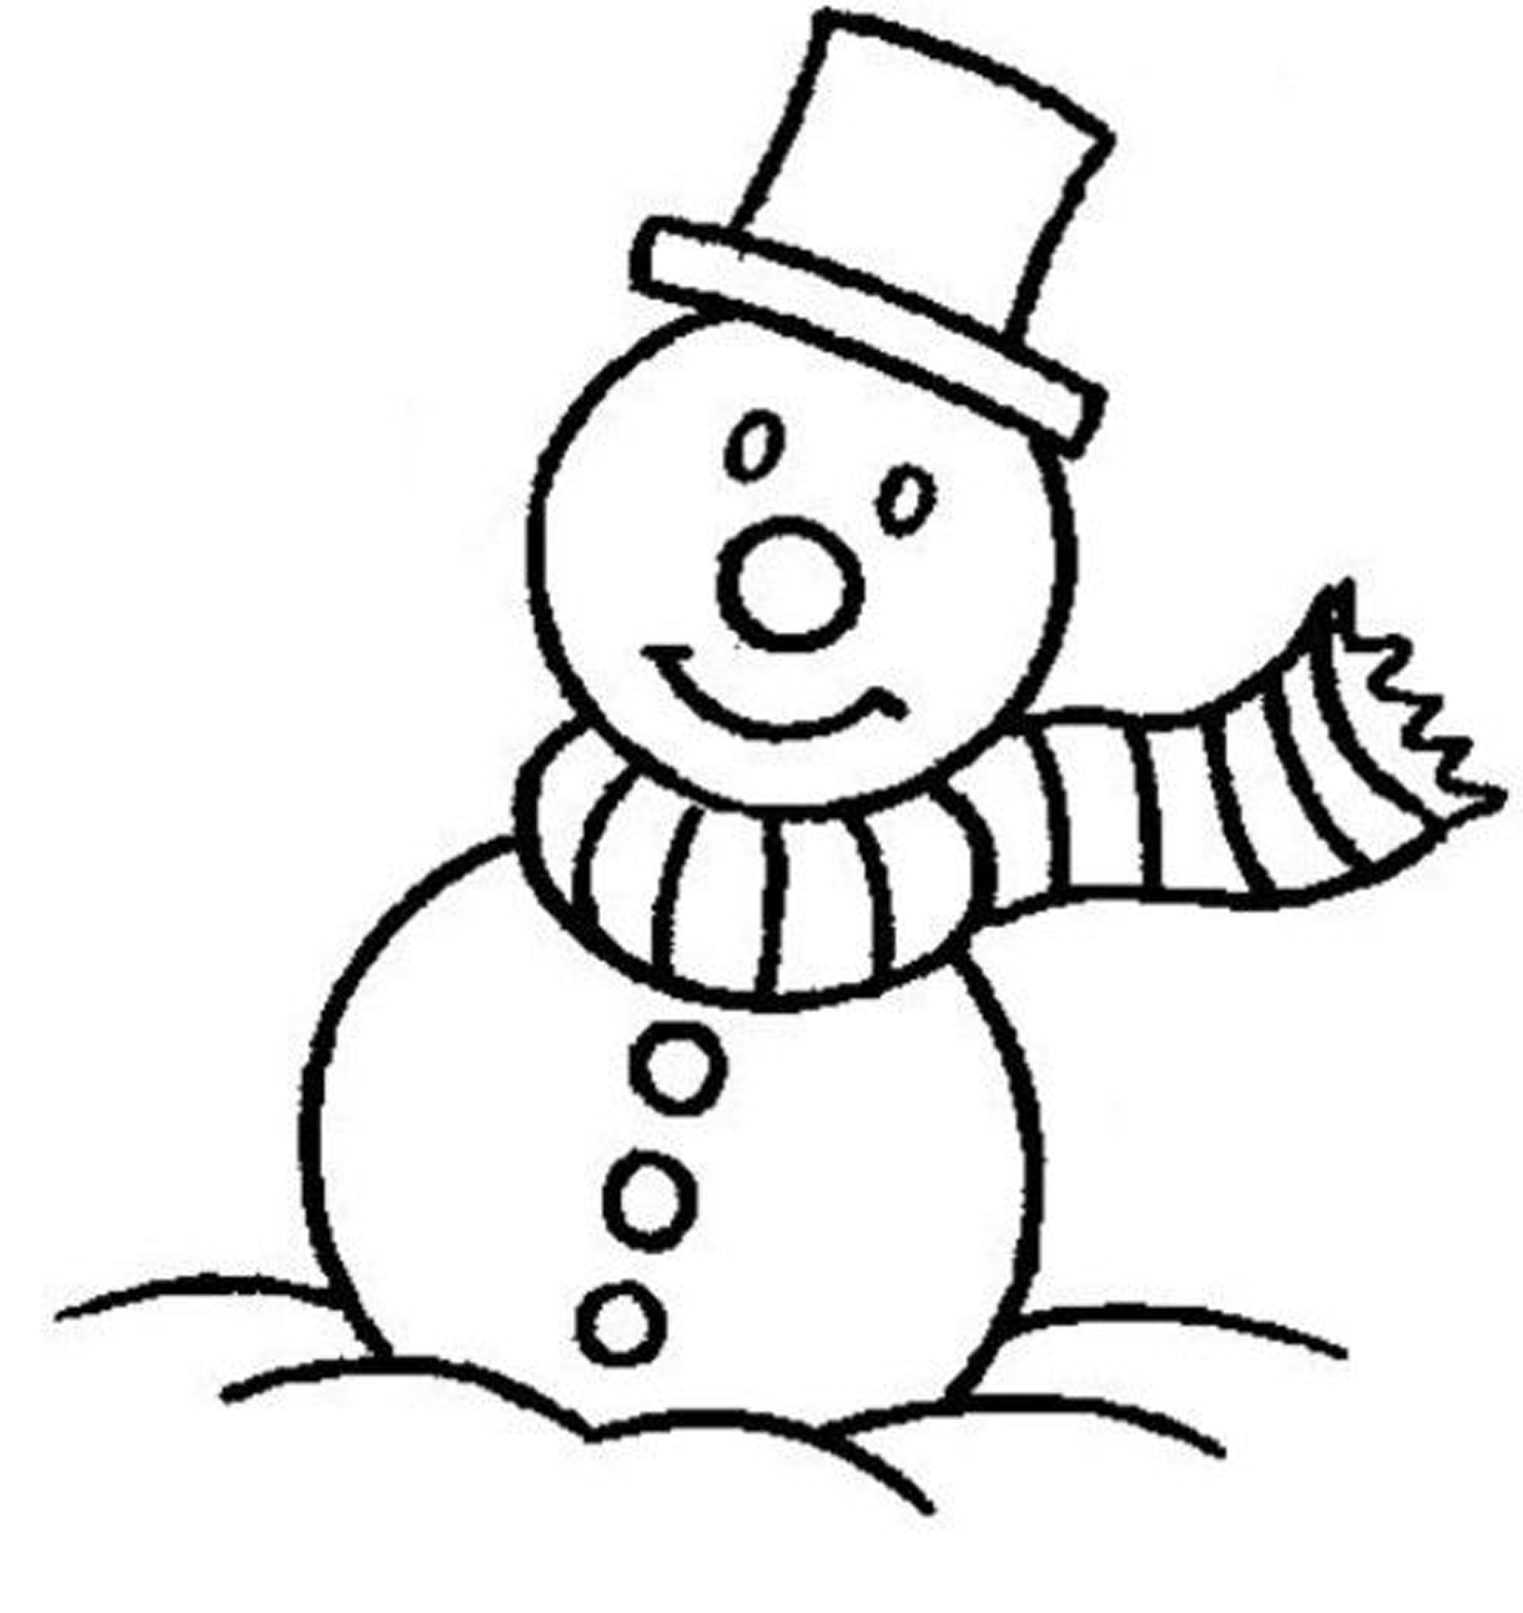 Снеговик картинка для детей раскраска